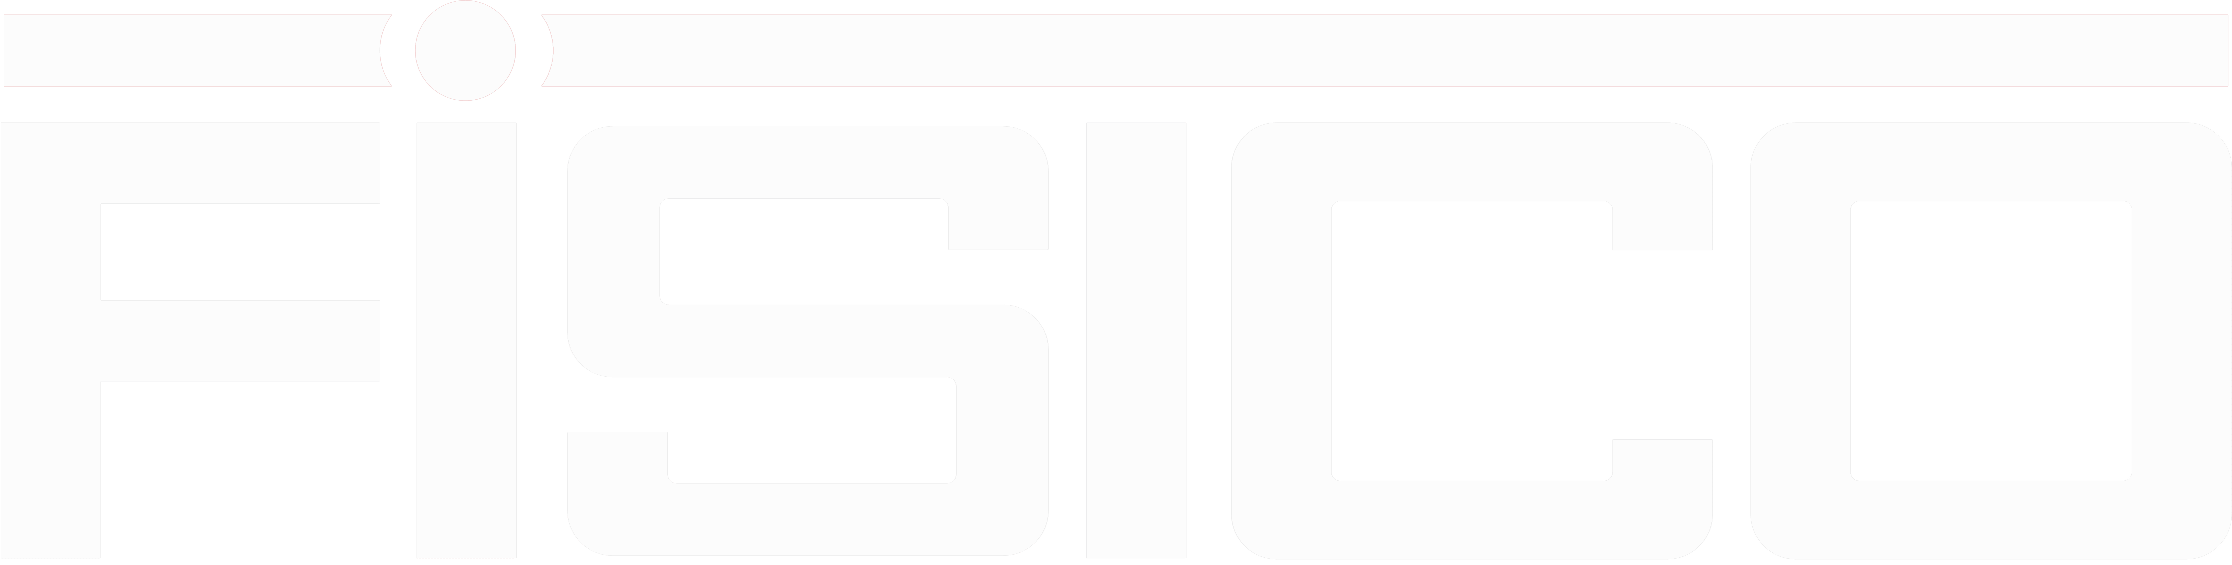 Fistco Logo